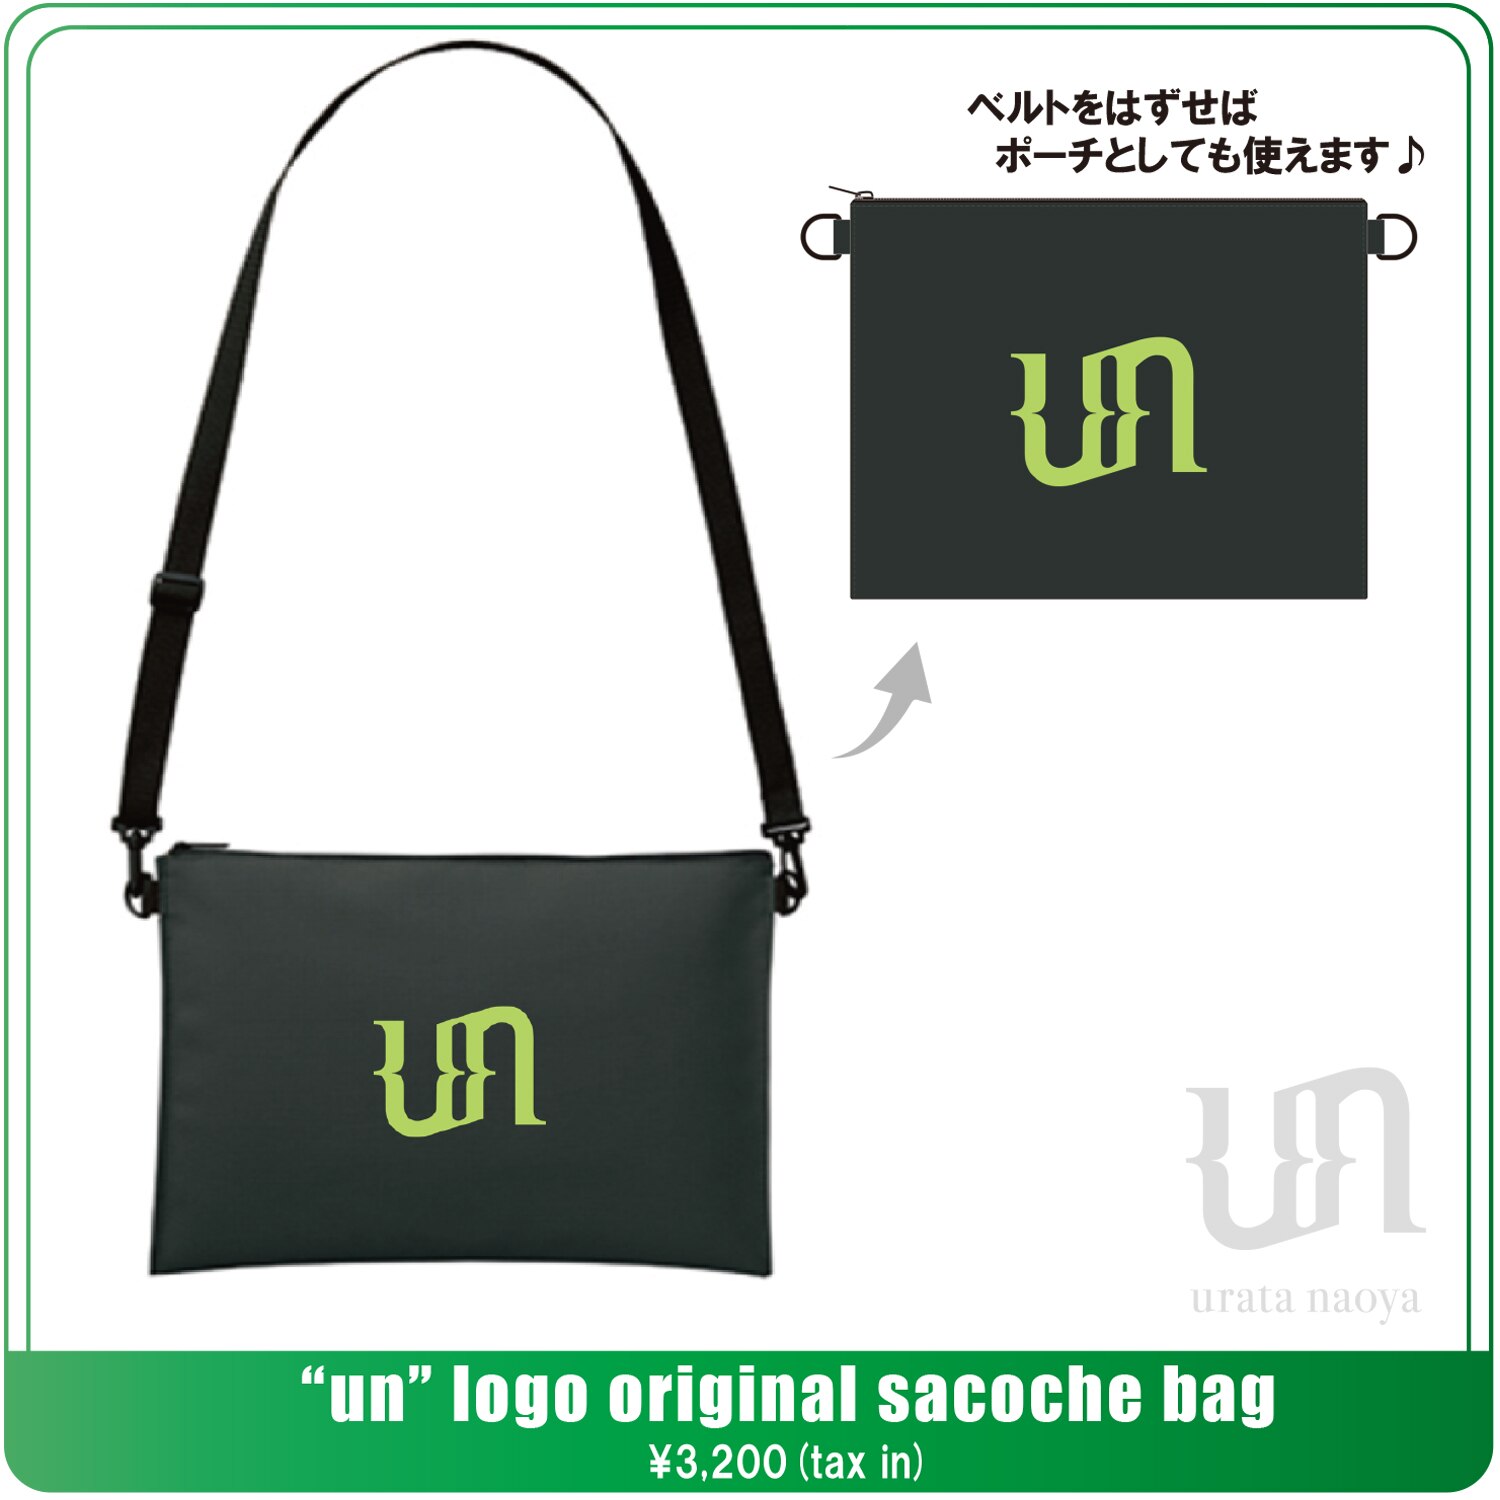 un” logo original sacoche bag発売決定!! | 浦田直也 （ウラタナオヤ）urata naoya OFFICIAL  WEBSITE